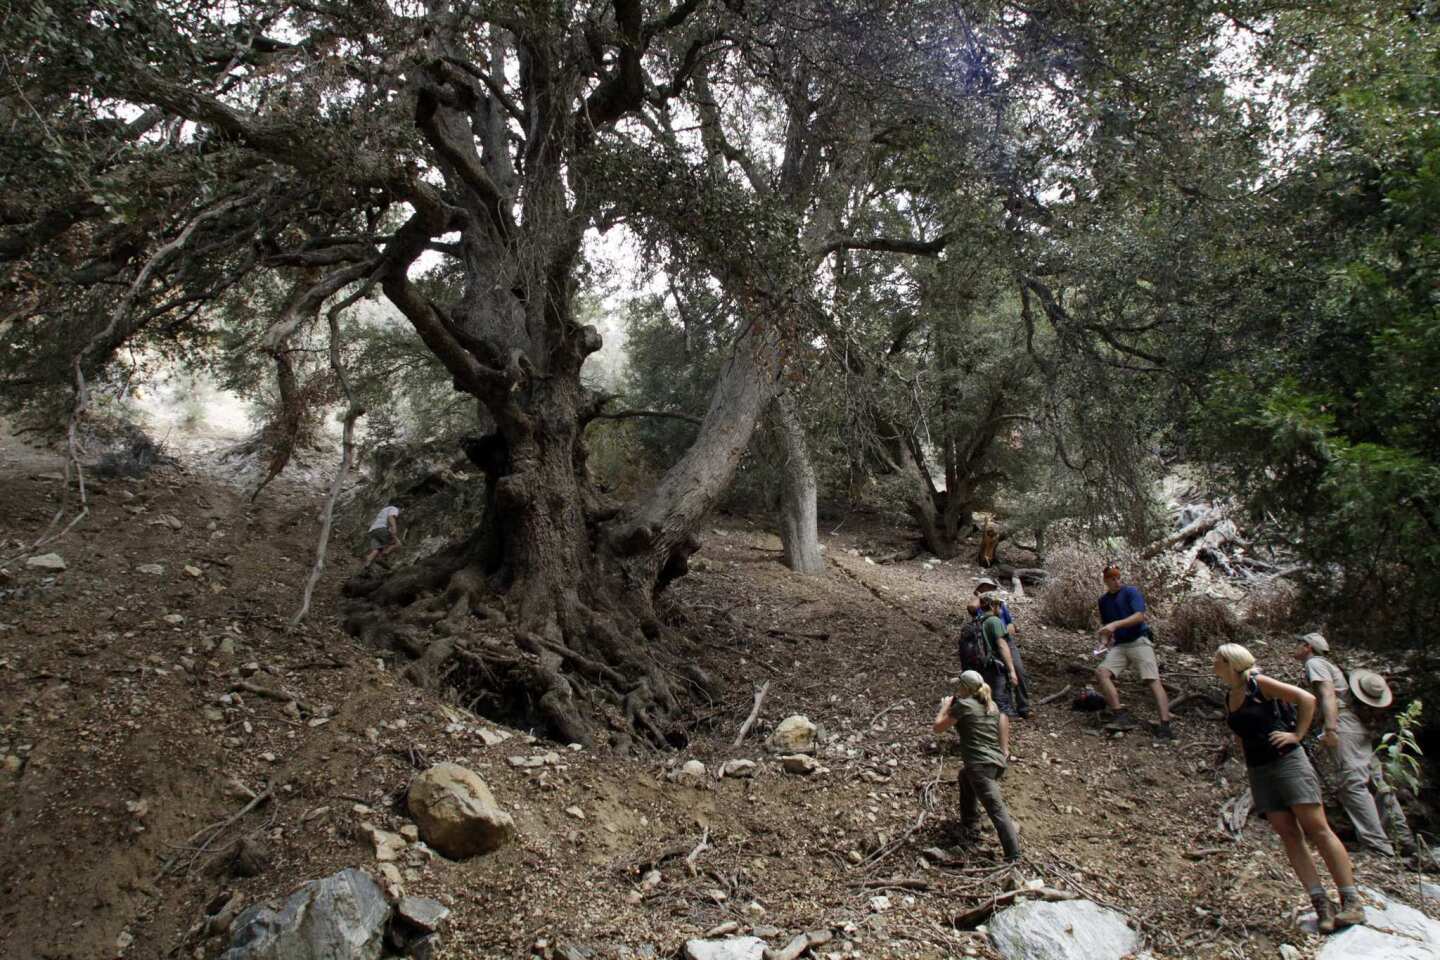 The largest oak